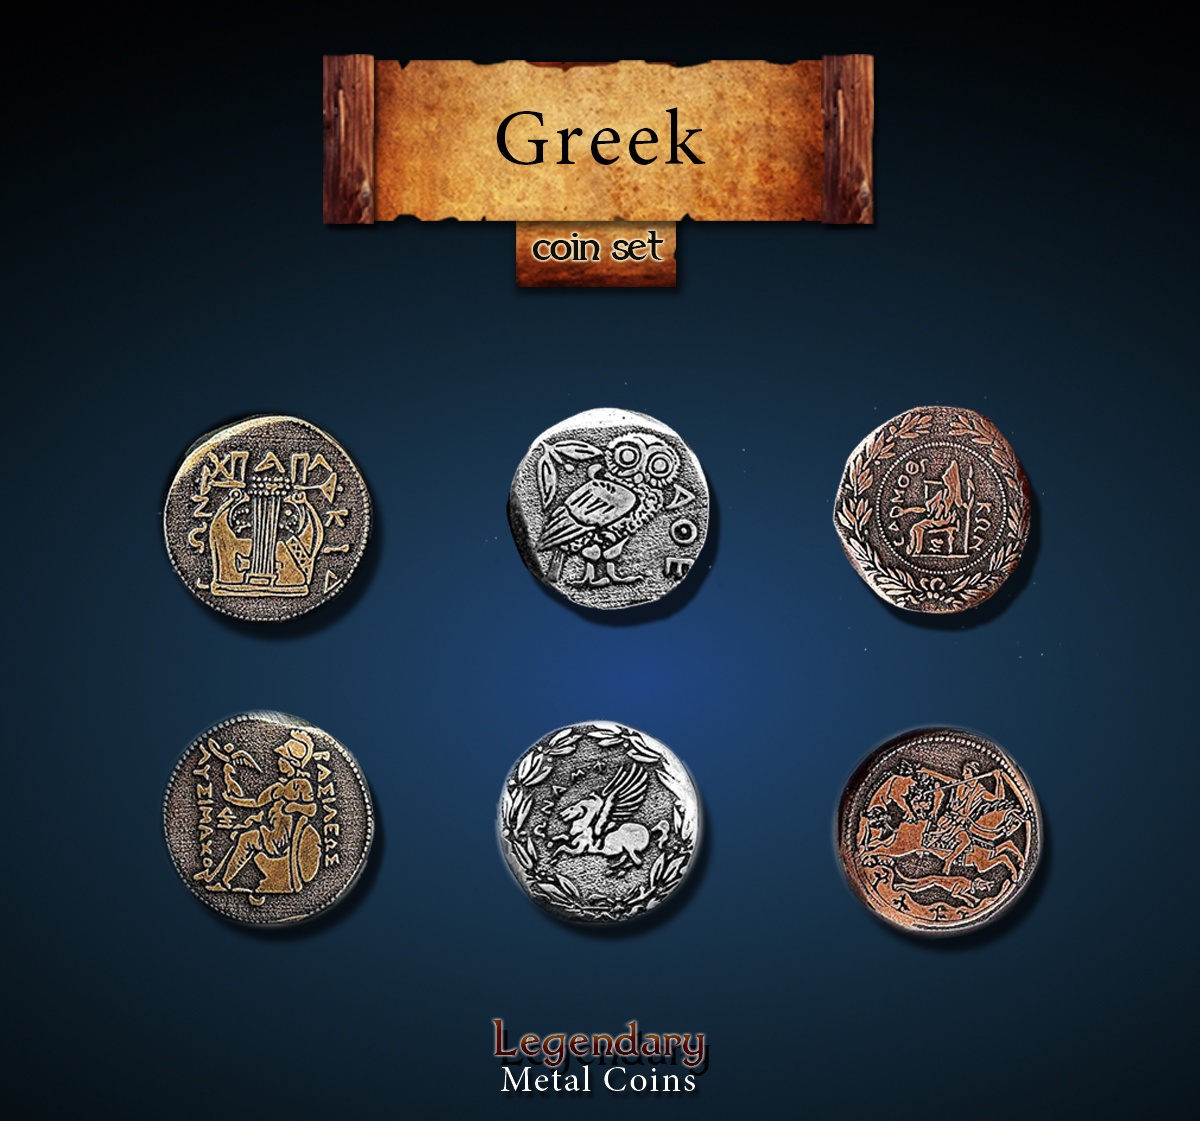 Greek Coin Set Legendary Metal Coins